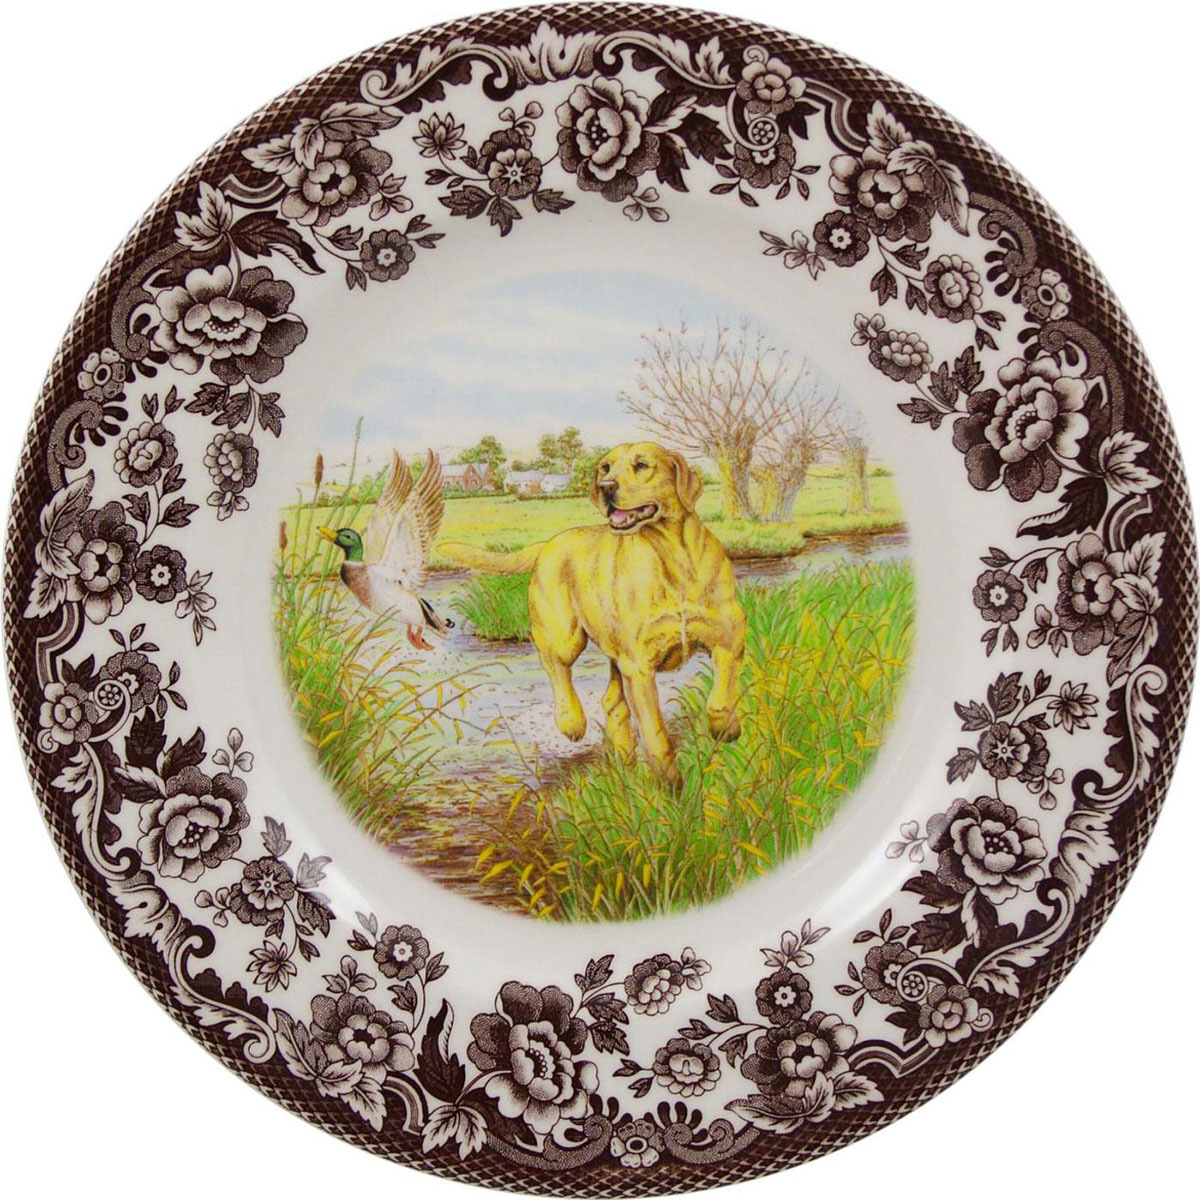 Spode Woodland Hunting Dogs Salad Plate, Yellow Labrador Retriever